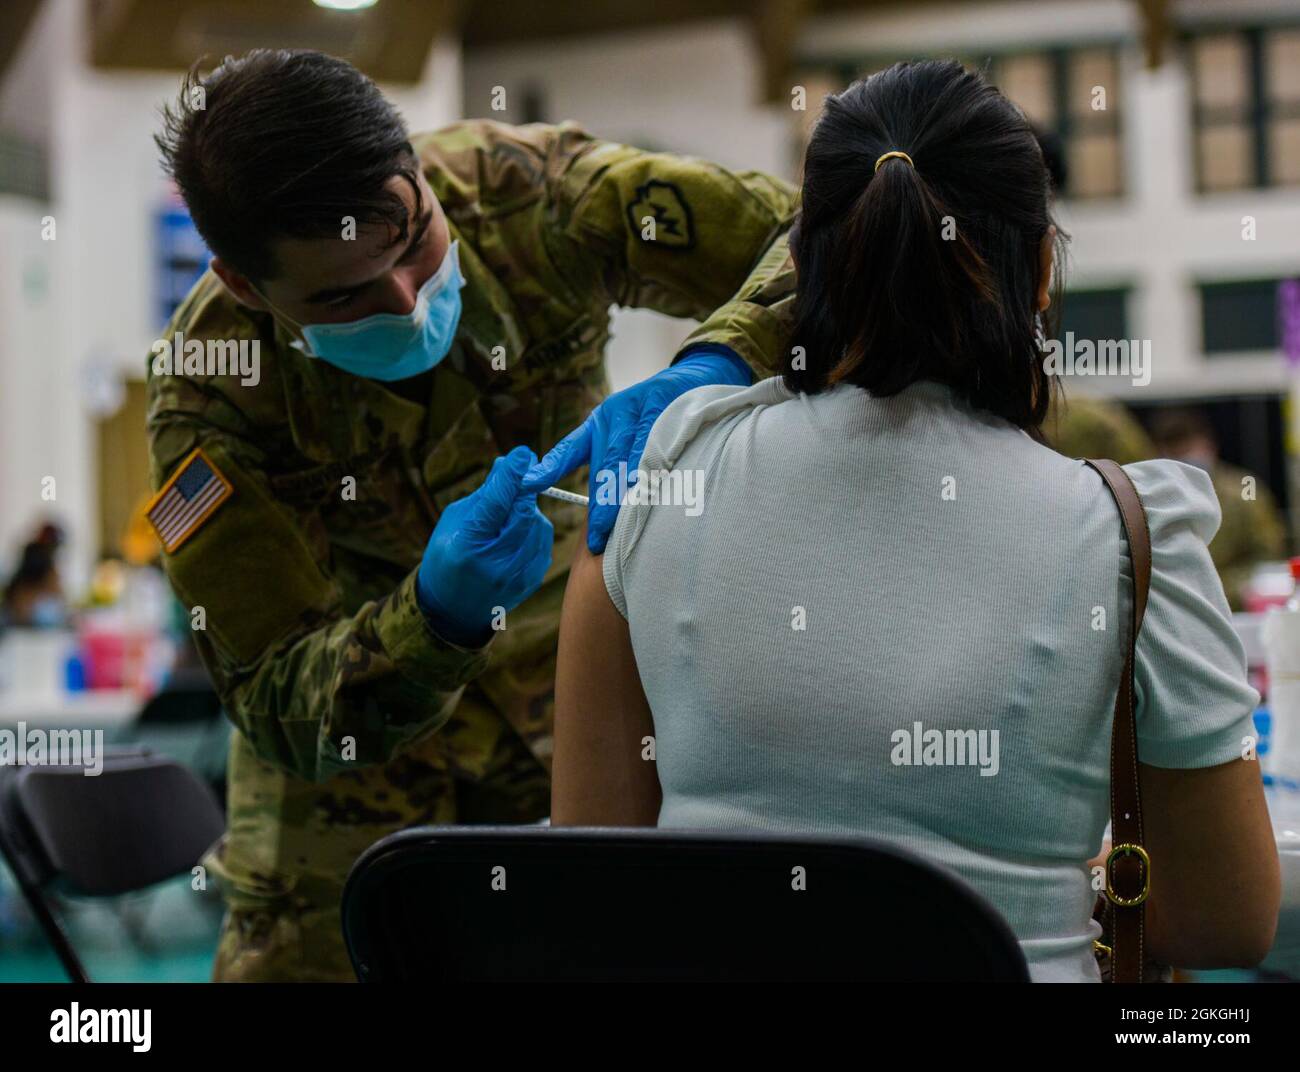 MANGILAO, Guam (16. April 2021) – PFC. Ethan Van Veldhuizen, ein Kampfmediziner, der der 25. Infanterie-Division zugewiesen ist, verabreicht einen COVID-19-Impfstoff zur Unterstützung des COVID-19-Impfteams des Gesundheitsministeriums von Guam (DPHSS) in einer Impfklinik im Feldhaus der Universität von Guam Calvo. Das US-amerikanische Indo-Pacific Command über die US Army Pacific ist weiterhin bestrebt, die Federal Emergency Management Agency im Rahmen der Reaktion der gesamten Regierung auf COVID-19 weiterhin flexibel zu unterstützen. Stockfoto